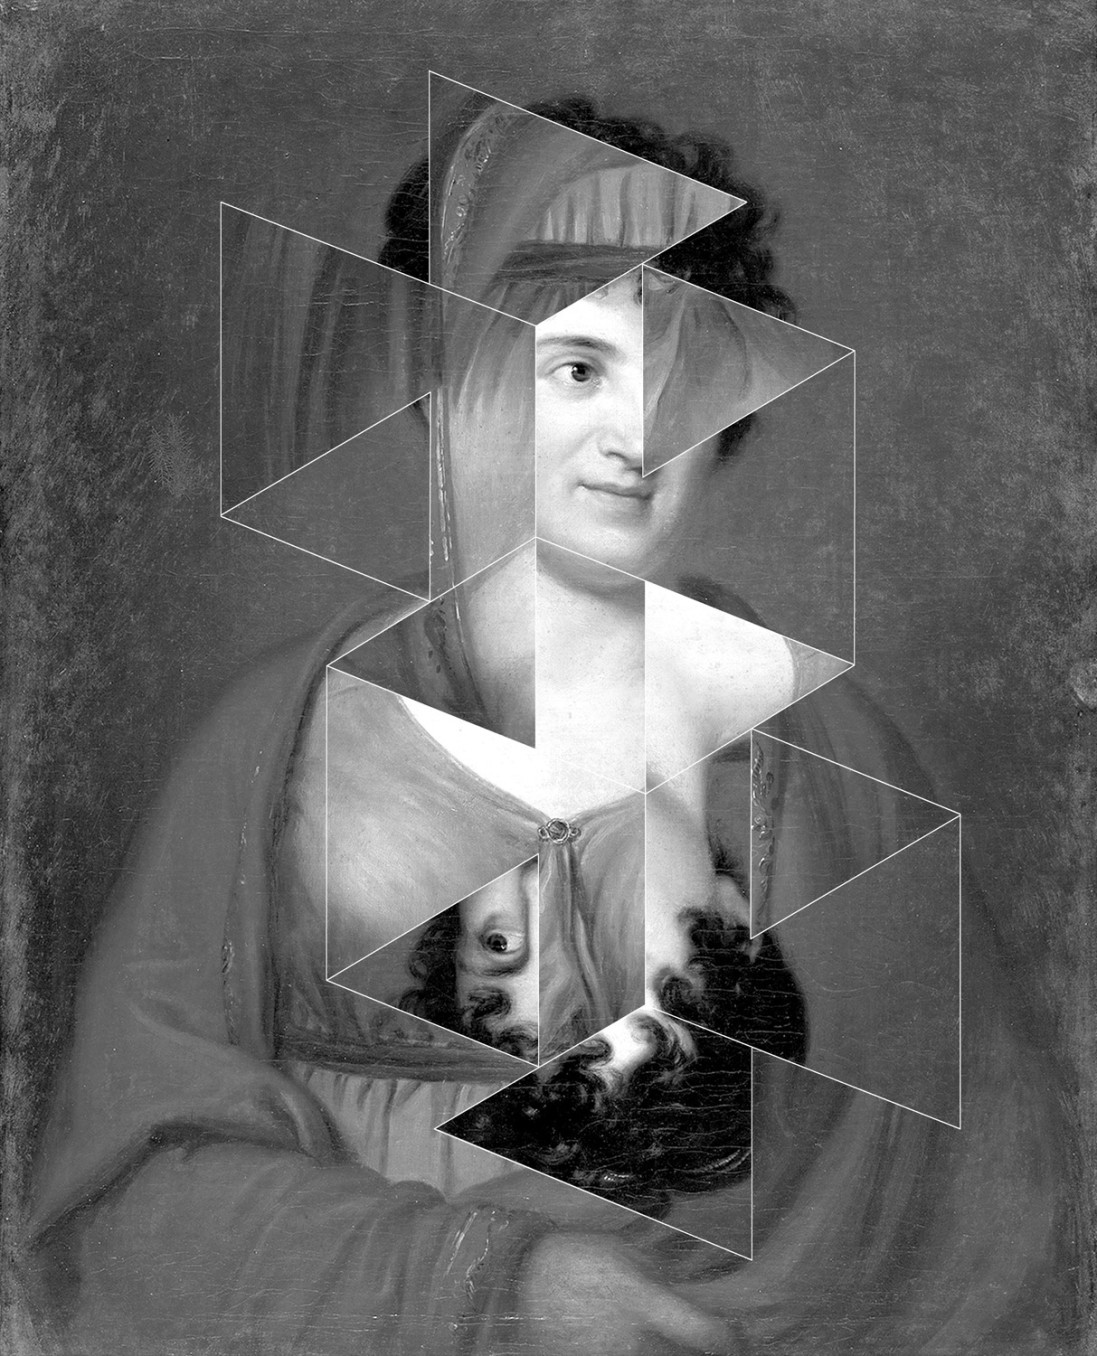 Andrea Geyer, Constellations (Henriette Herz after Georg Friedrich Schöner), 2018, Hand-cut archival print on rag paper, 85.7 x 69.5 cm, 33 3/4 x 27 3/8 in, Framed: 88.2 x 72 cm, 34 3/4 x 28 3/8 in